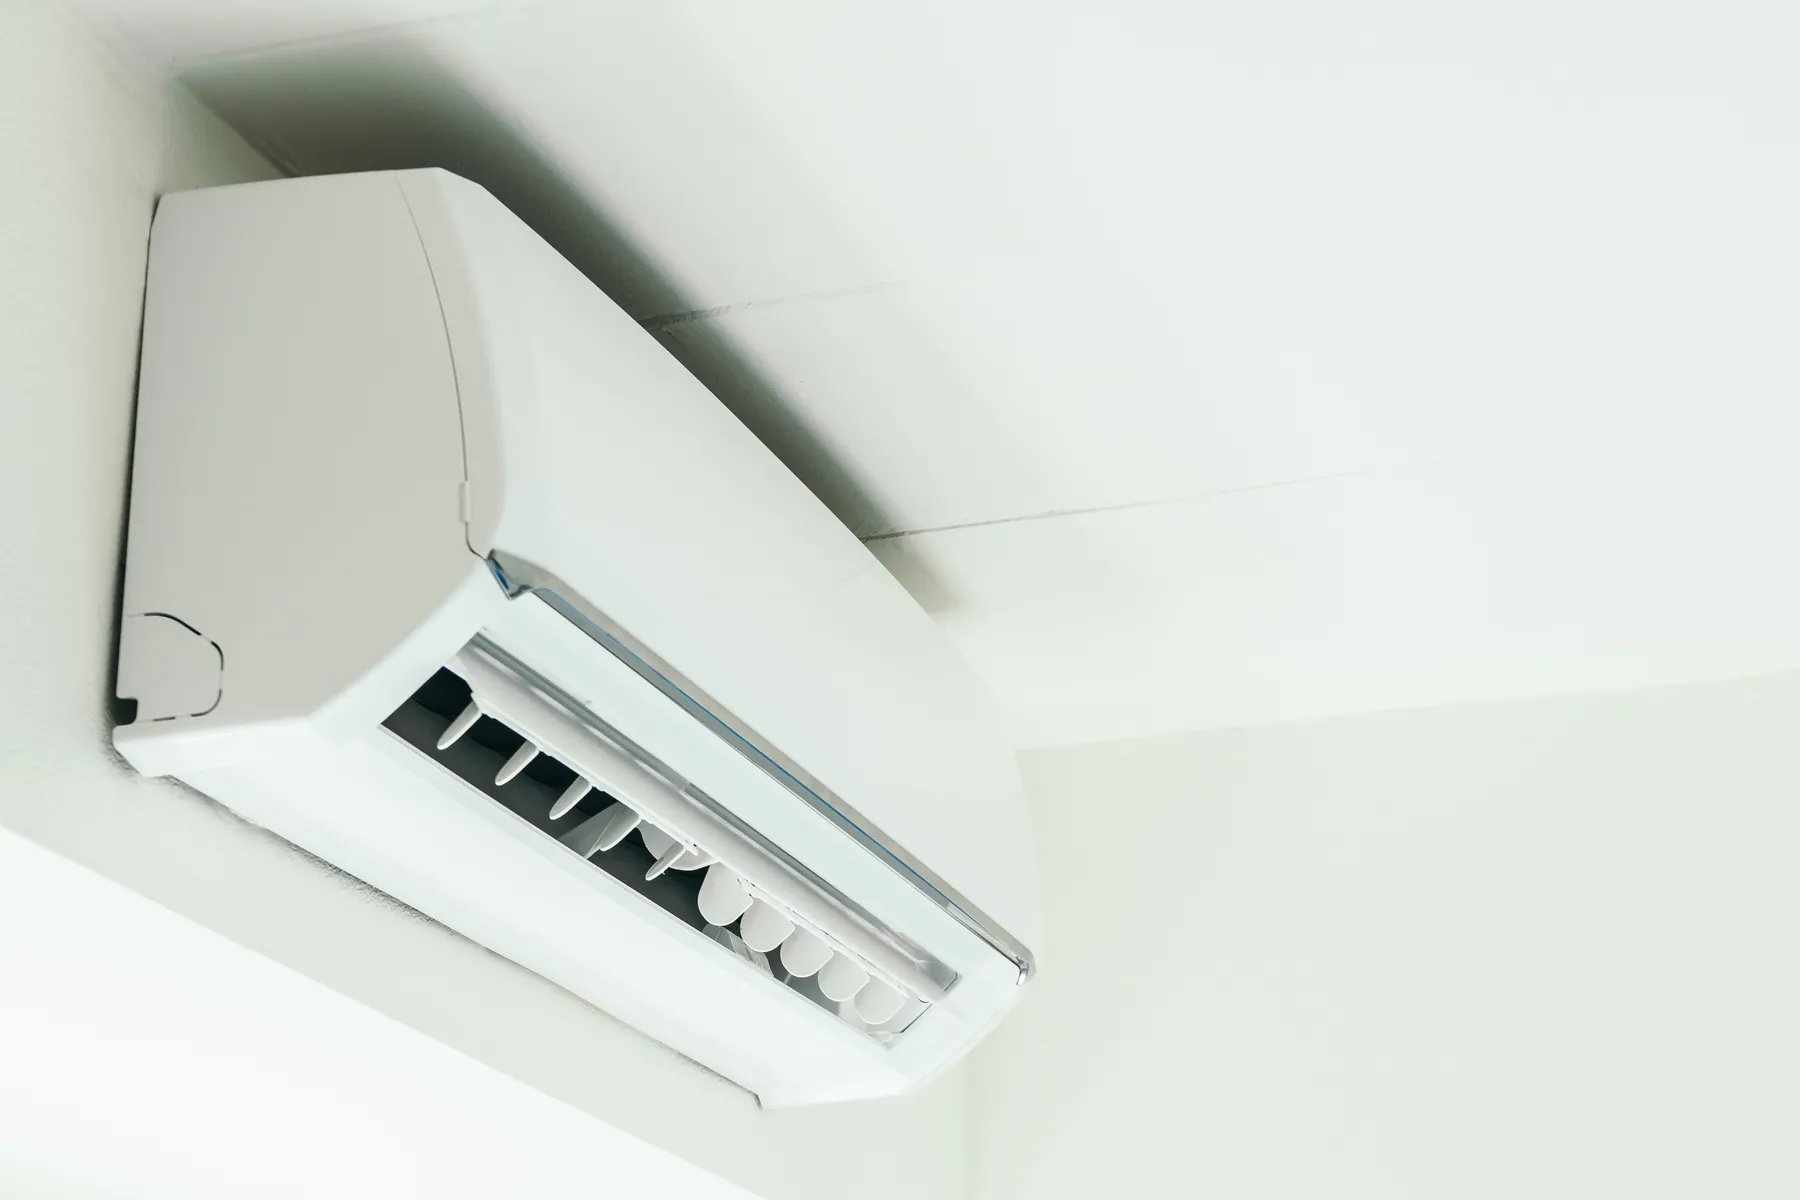 Quelles sont les normes à respecter pour l'installation d'une climatisation ?